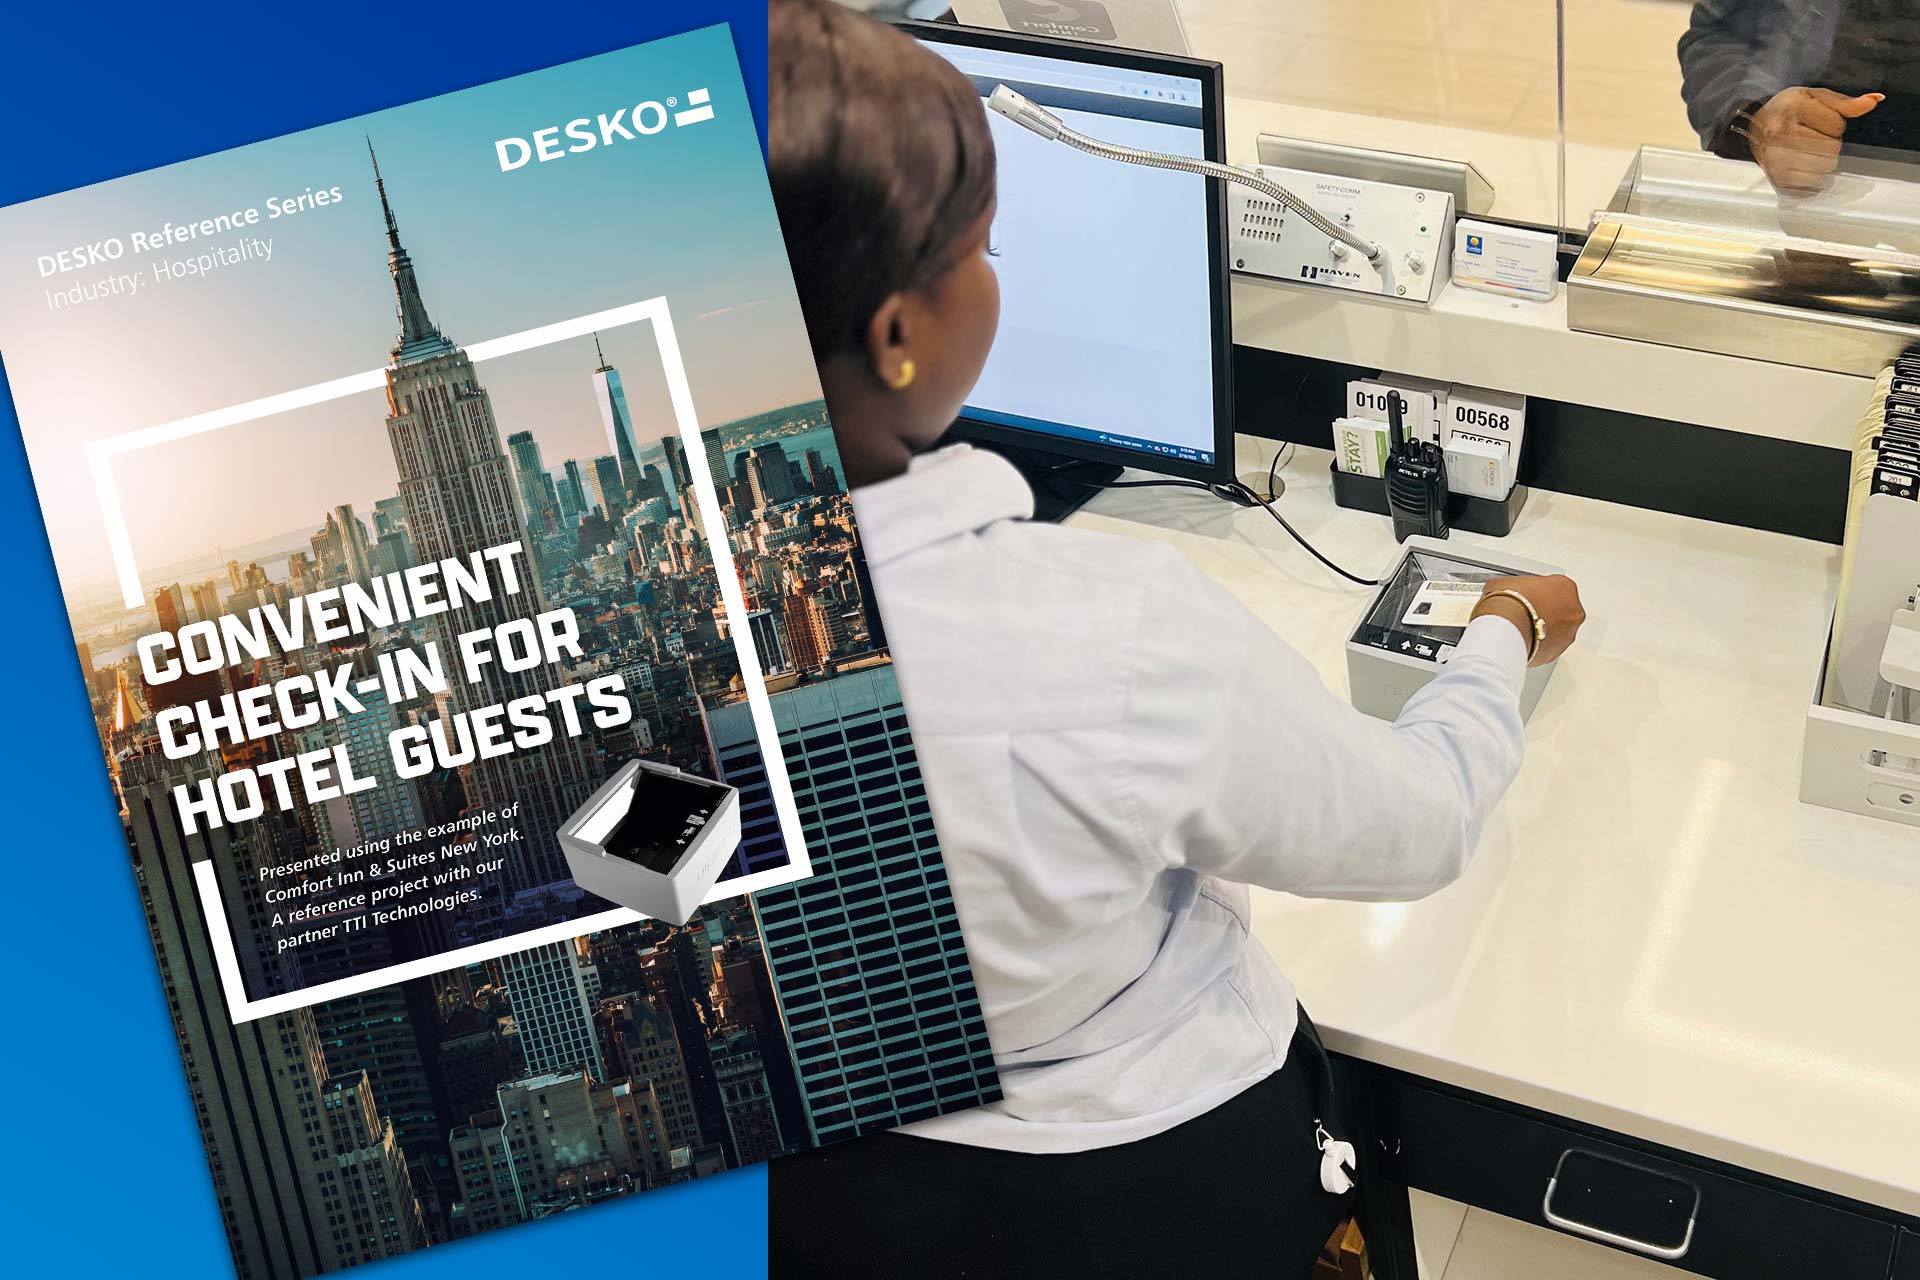 Go digital: DESKO und  TTI Technologies präsentieren digitale Lösung für den Hotel Check-in